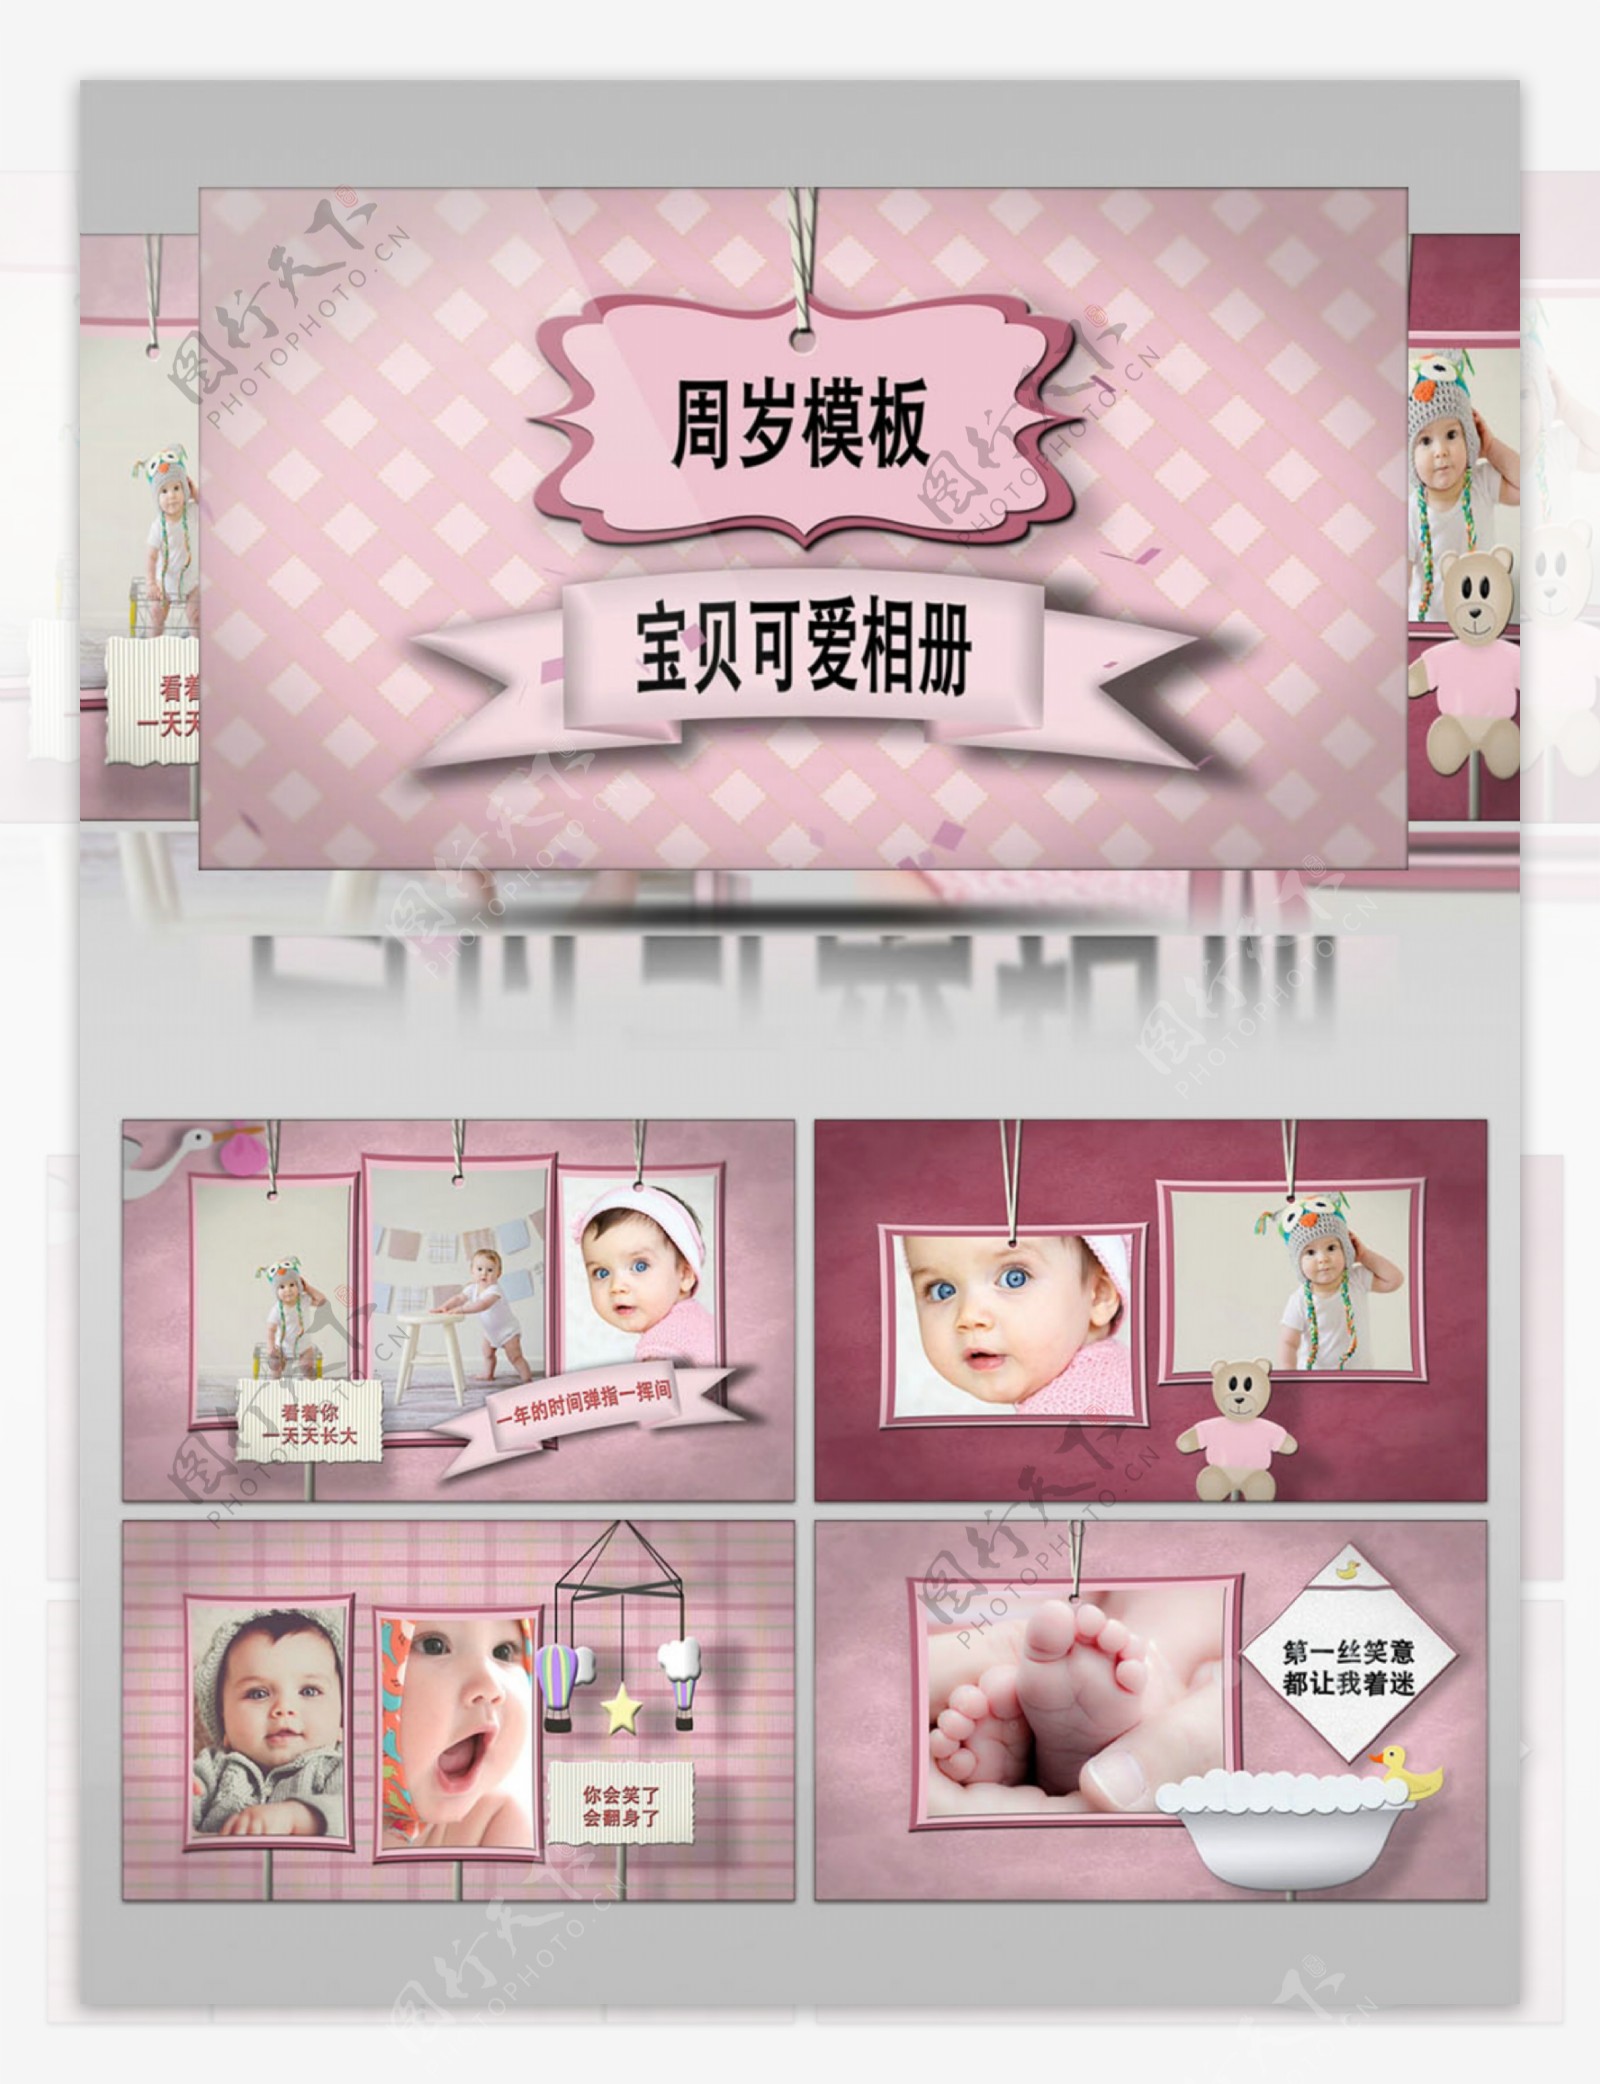 粉色可爱剪贴卡通效果婴儿周岁相册ae模板